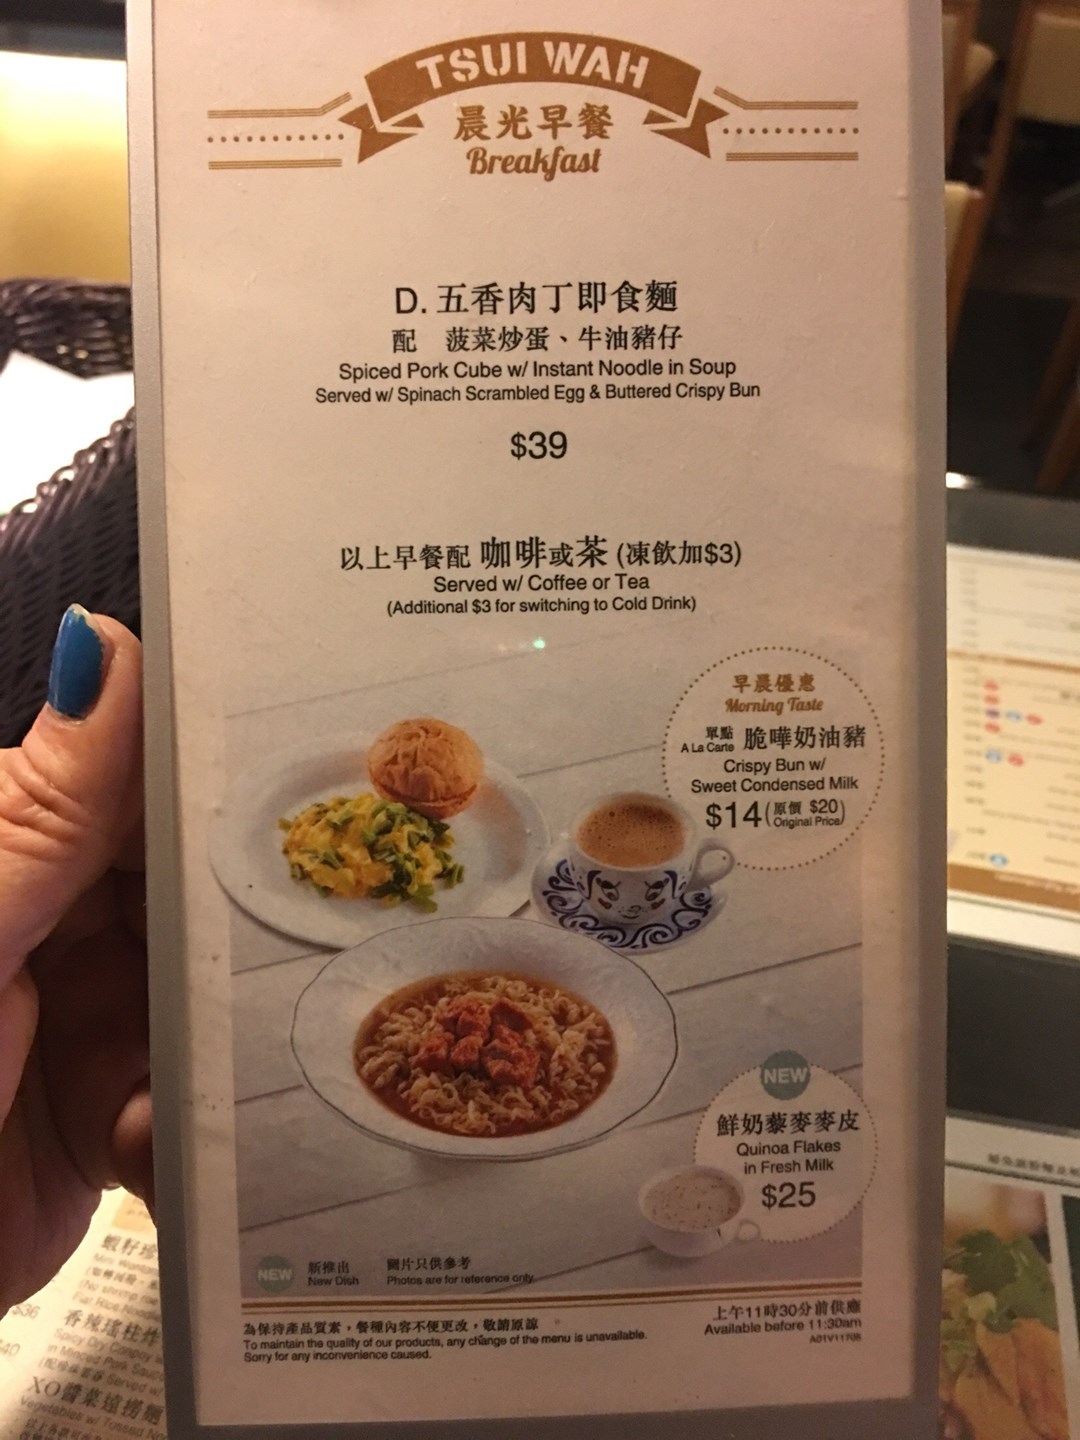 翠华茶餐厅,广州翠华餐厅 - 伤感说说吧